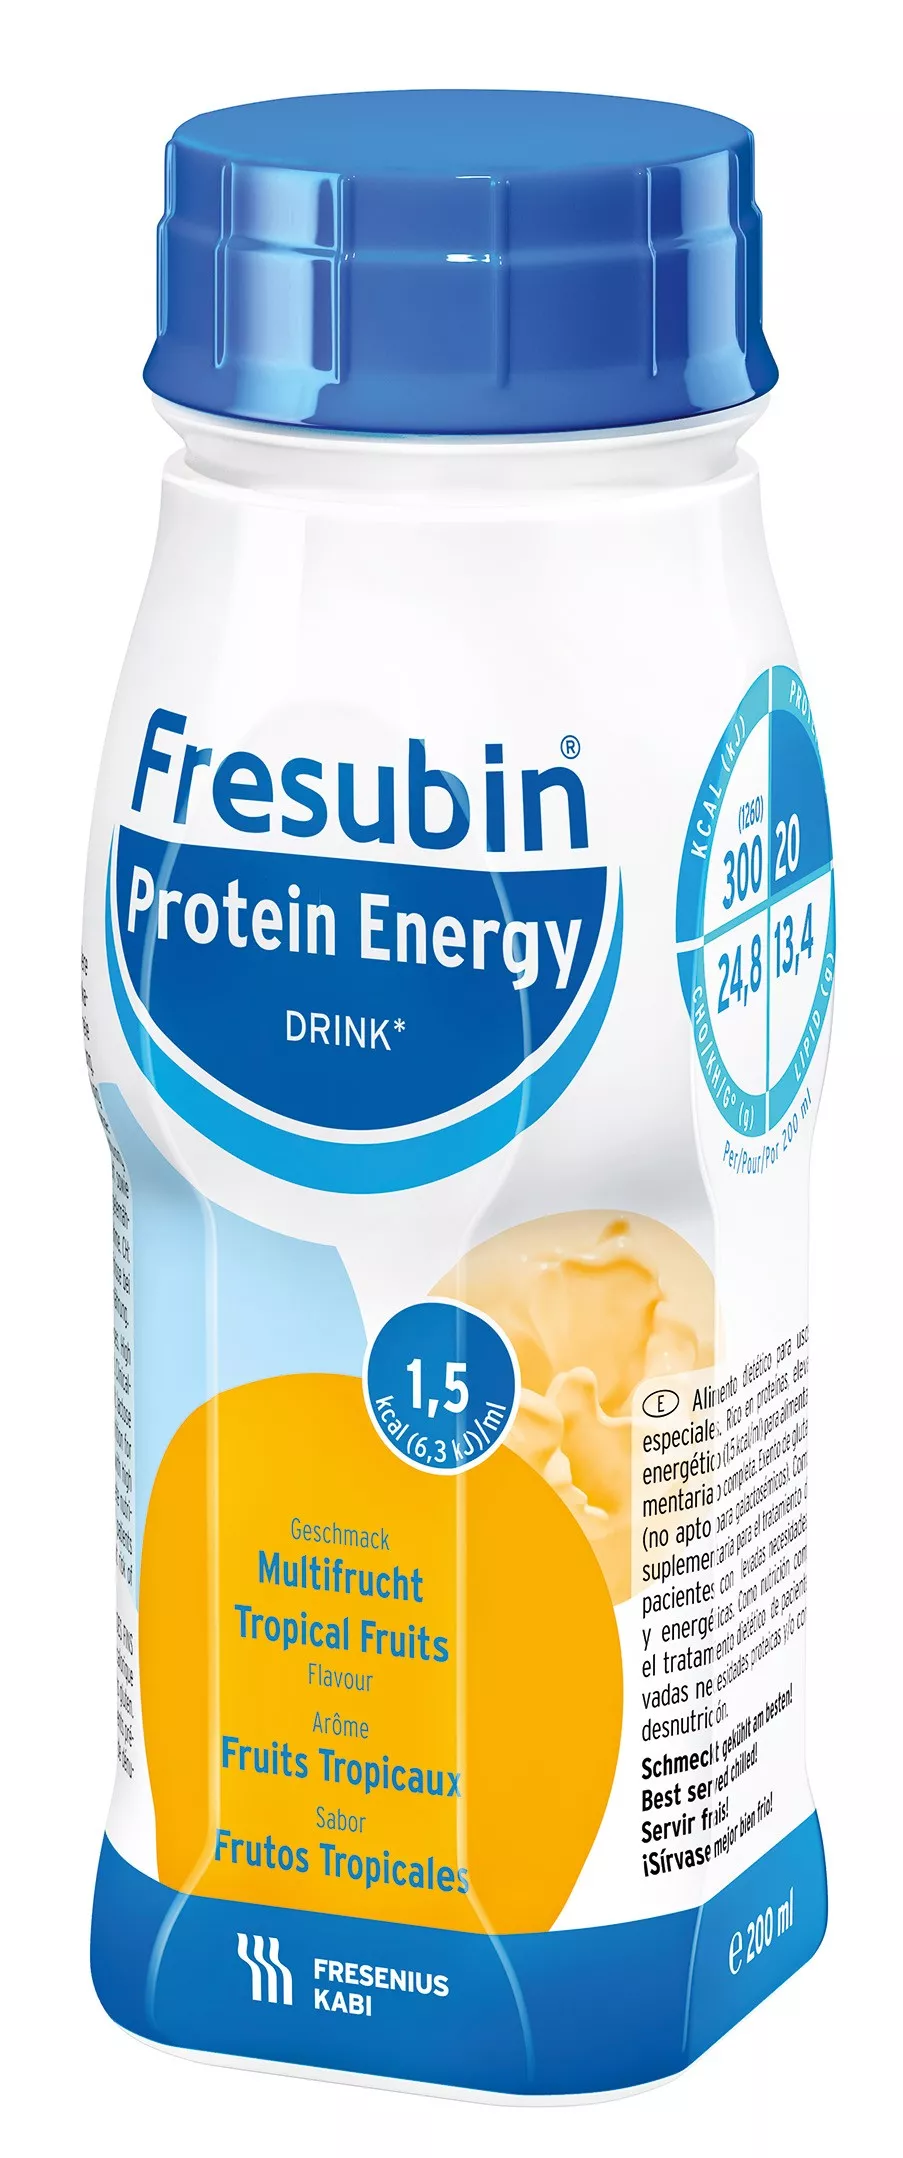 Bautura Fresubin Protein Energy 1,5kcal cu aroma de fructe tropicale, 200ml, Fresenius Kabi, [],remediumfarm.ro